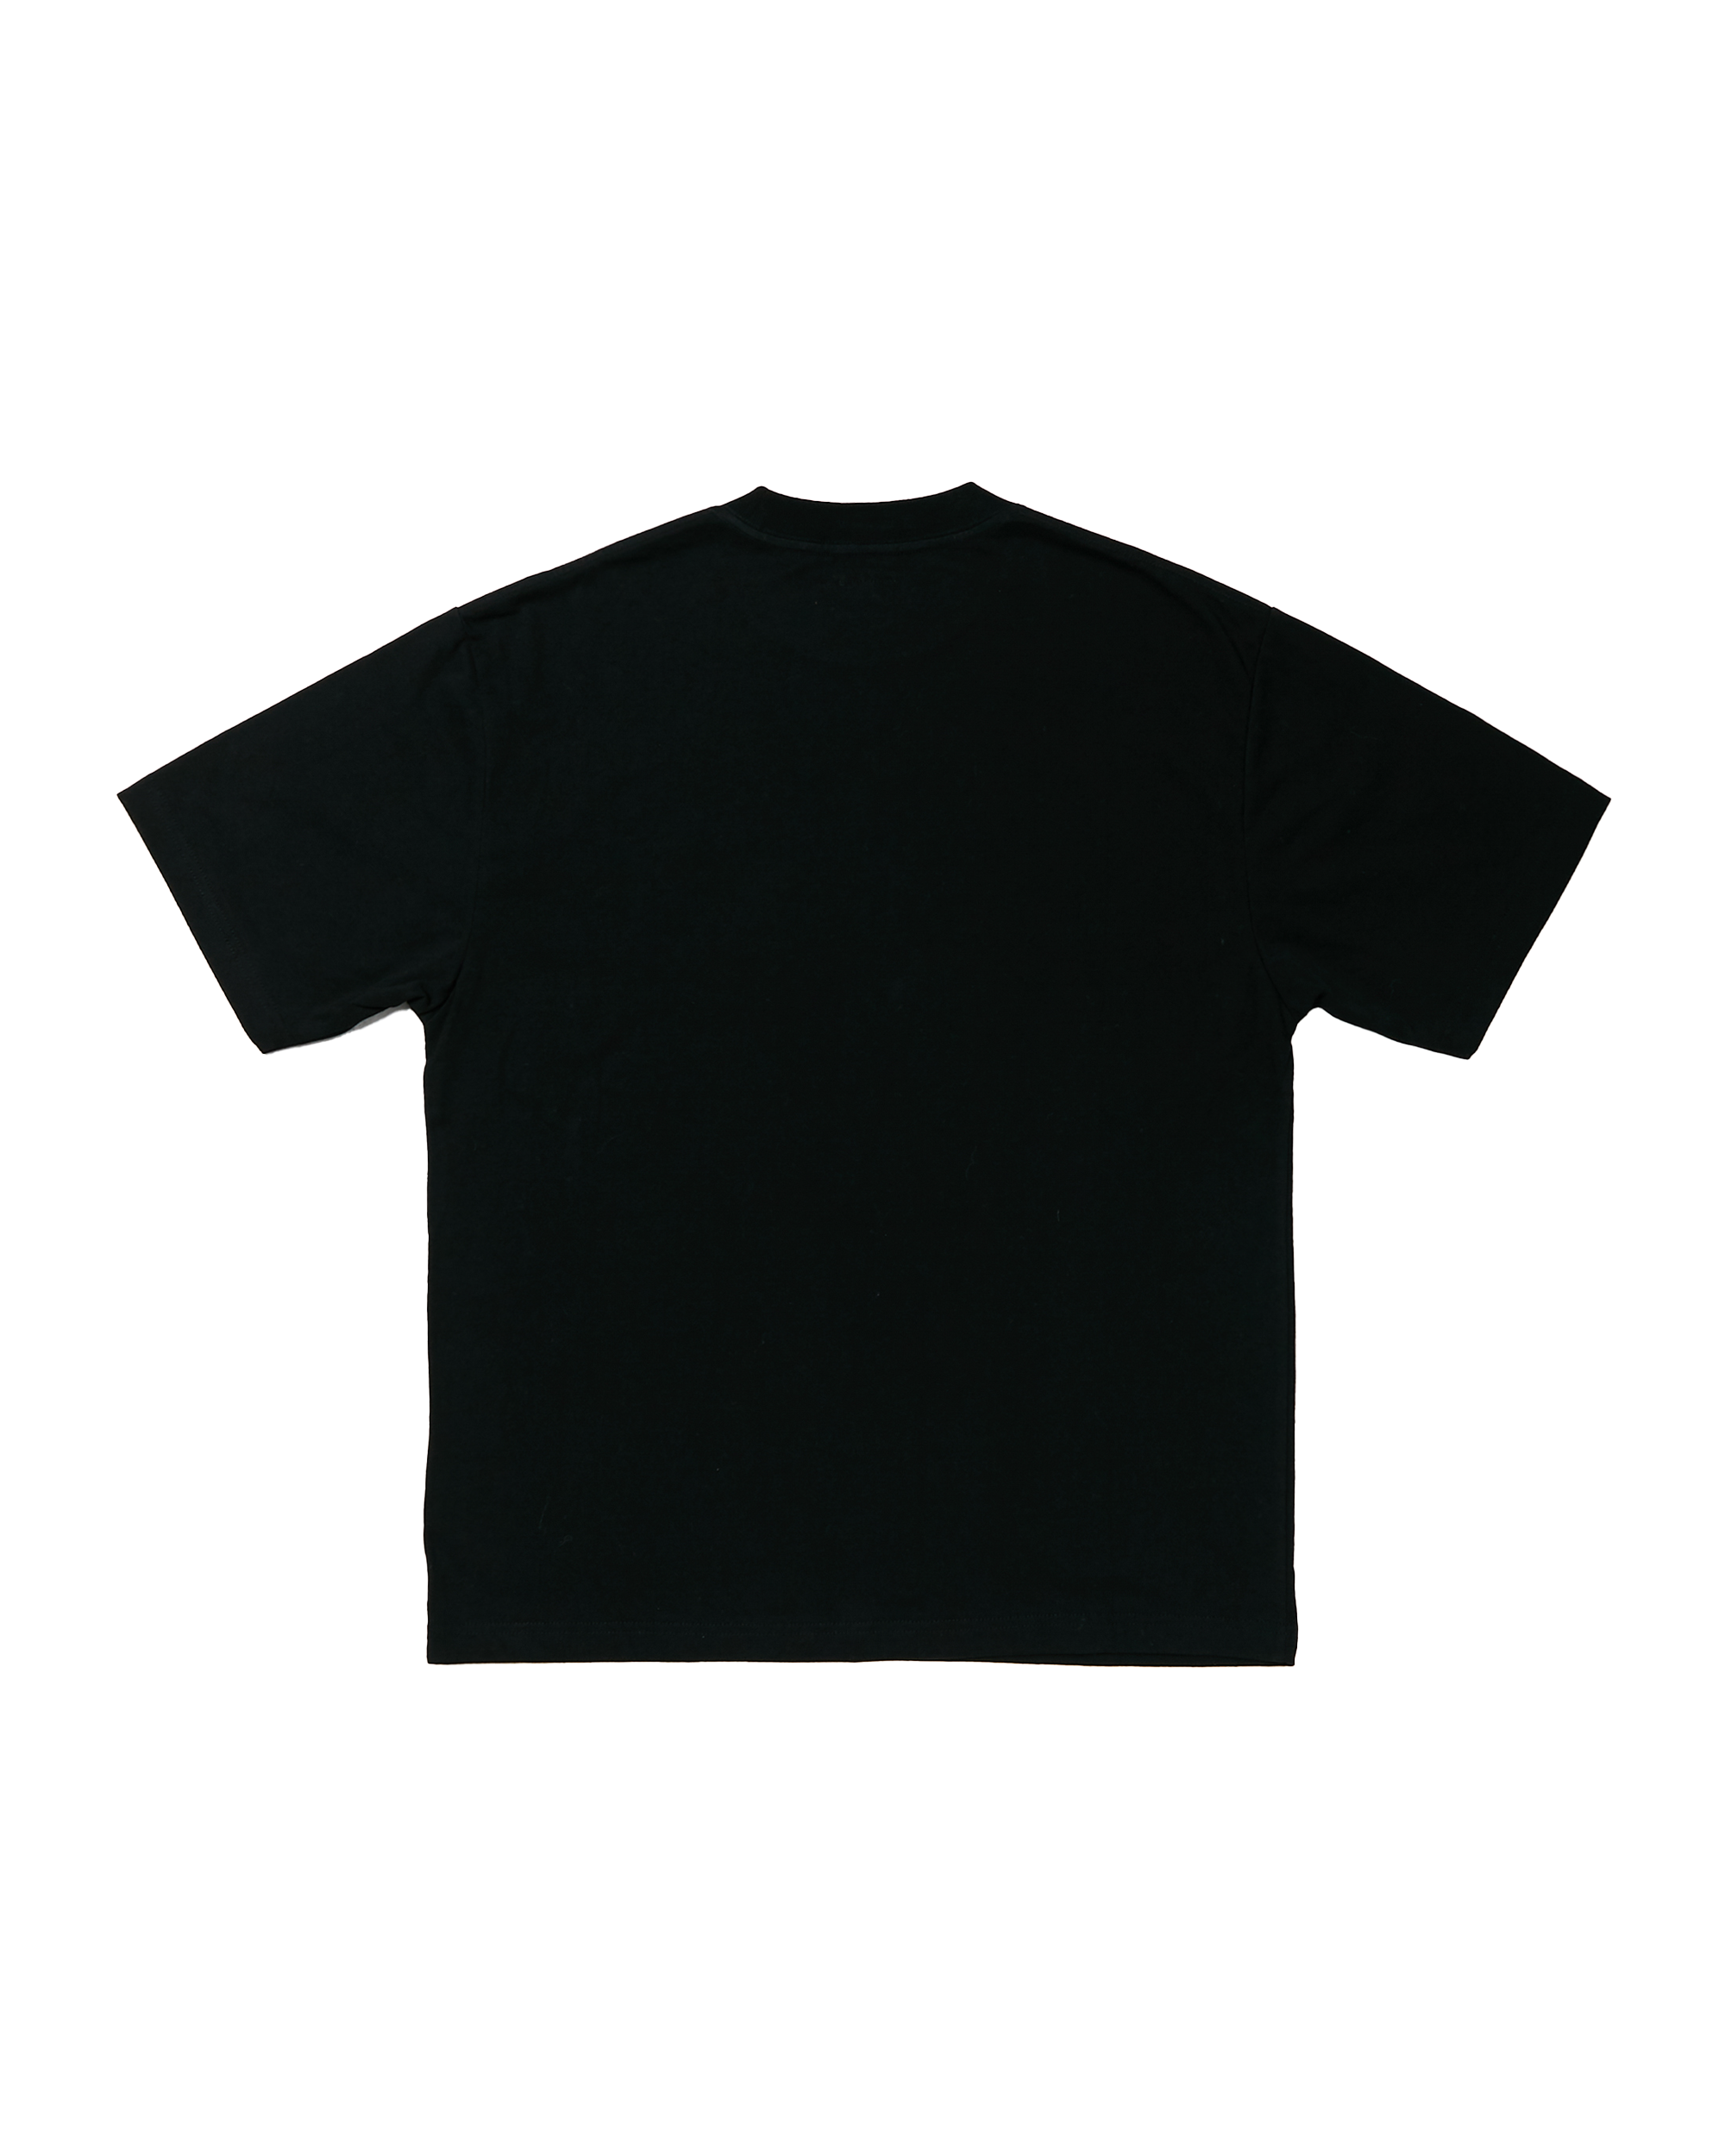 Gnome T-shirt - Black